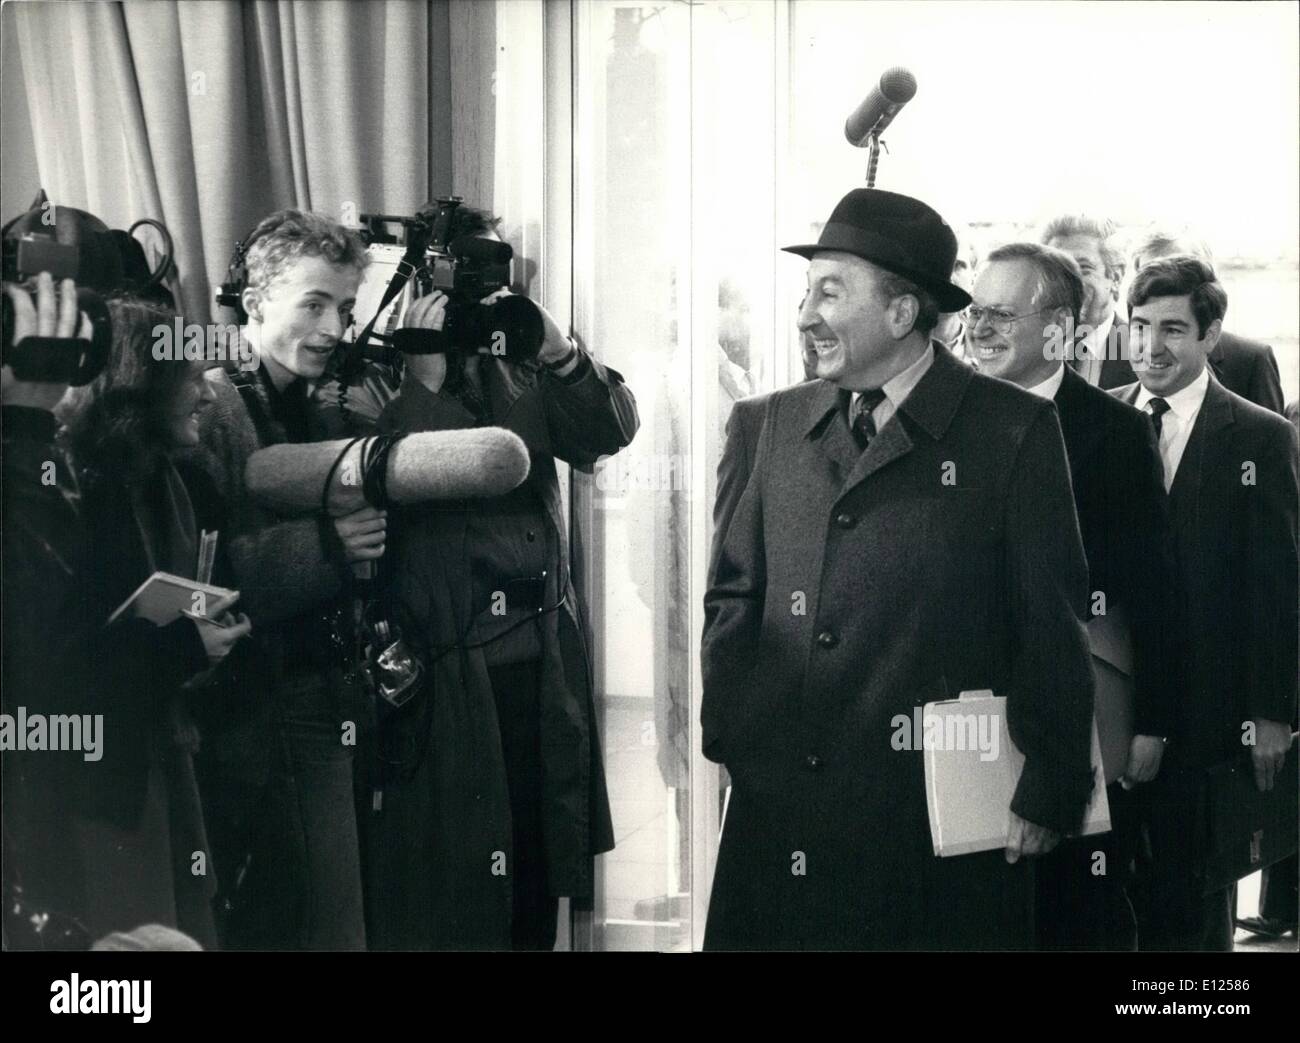 Avril 04, 1987 Genève - armes nucléaires parle : négociateur d'armes américaines Max Kampelmann entre dans la mission soviétique le lundi à Genève, Suisse. Banque D'Images